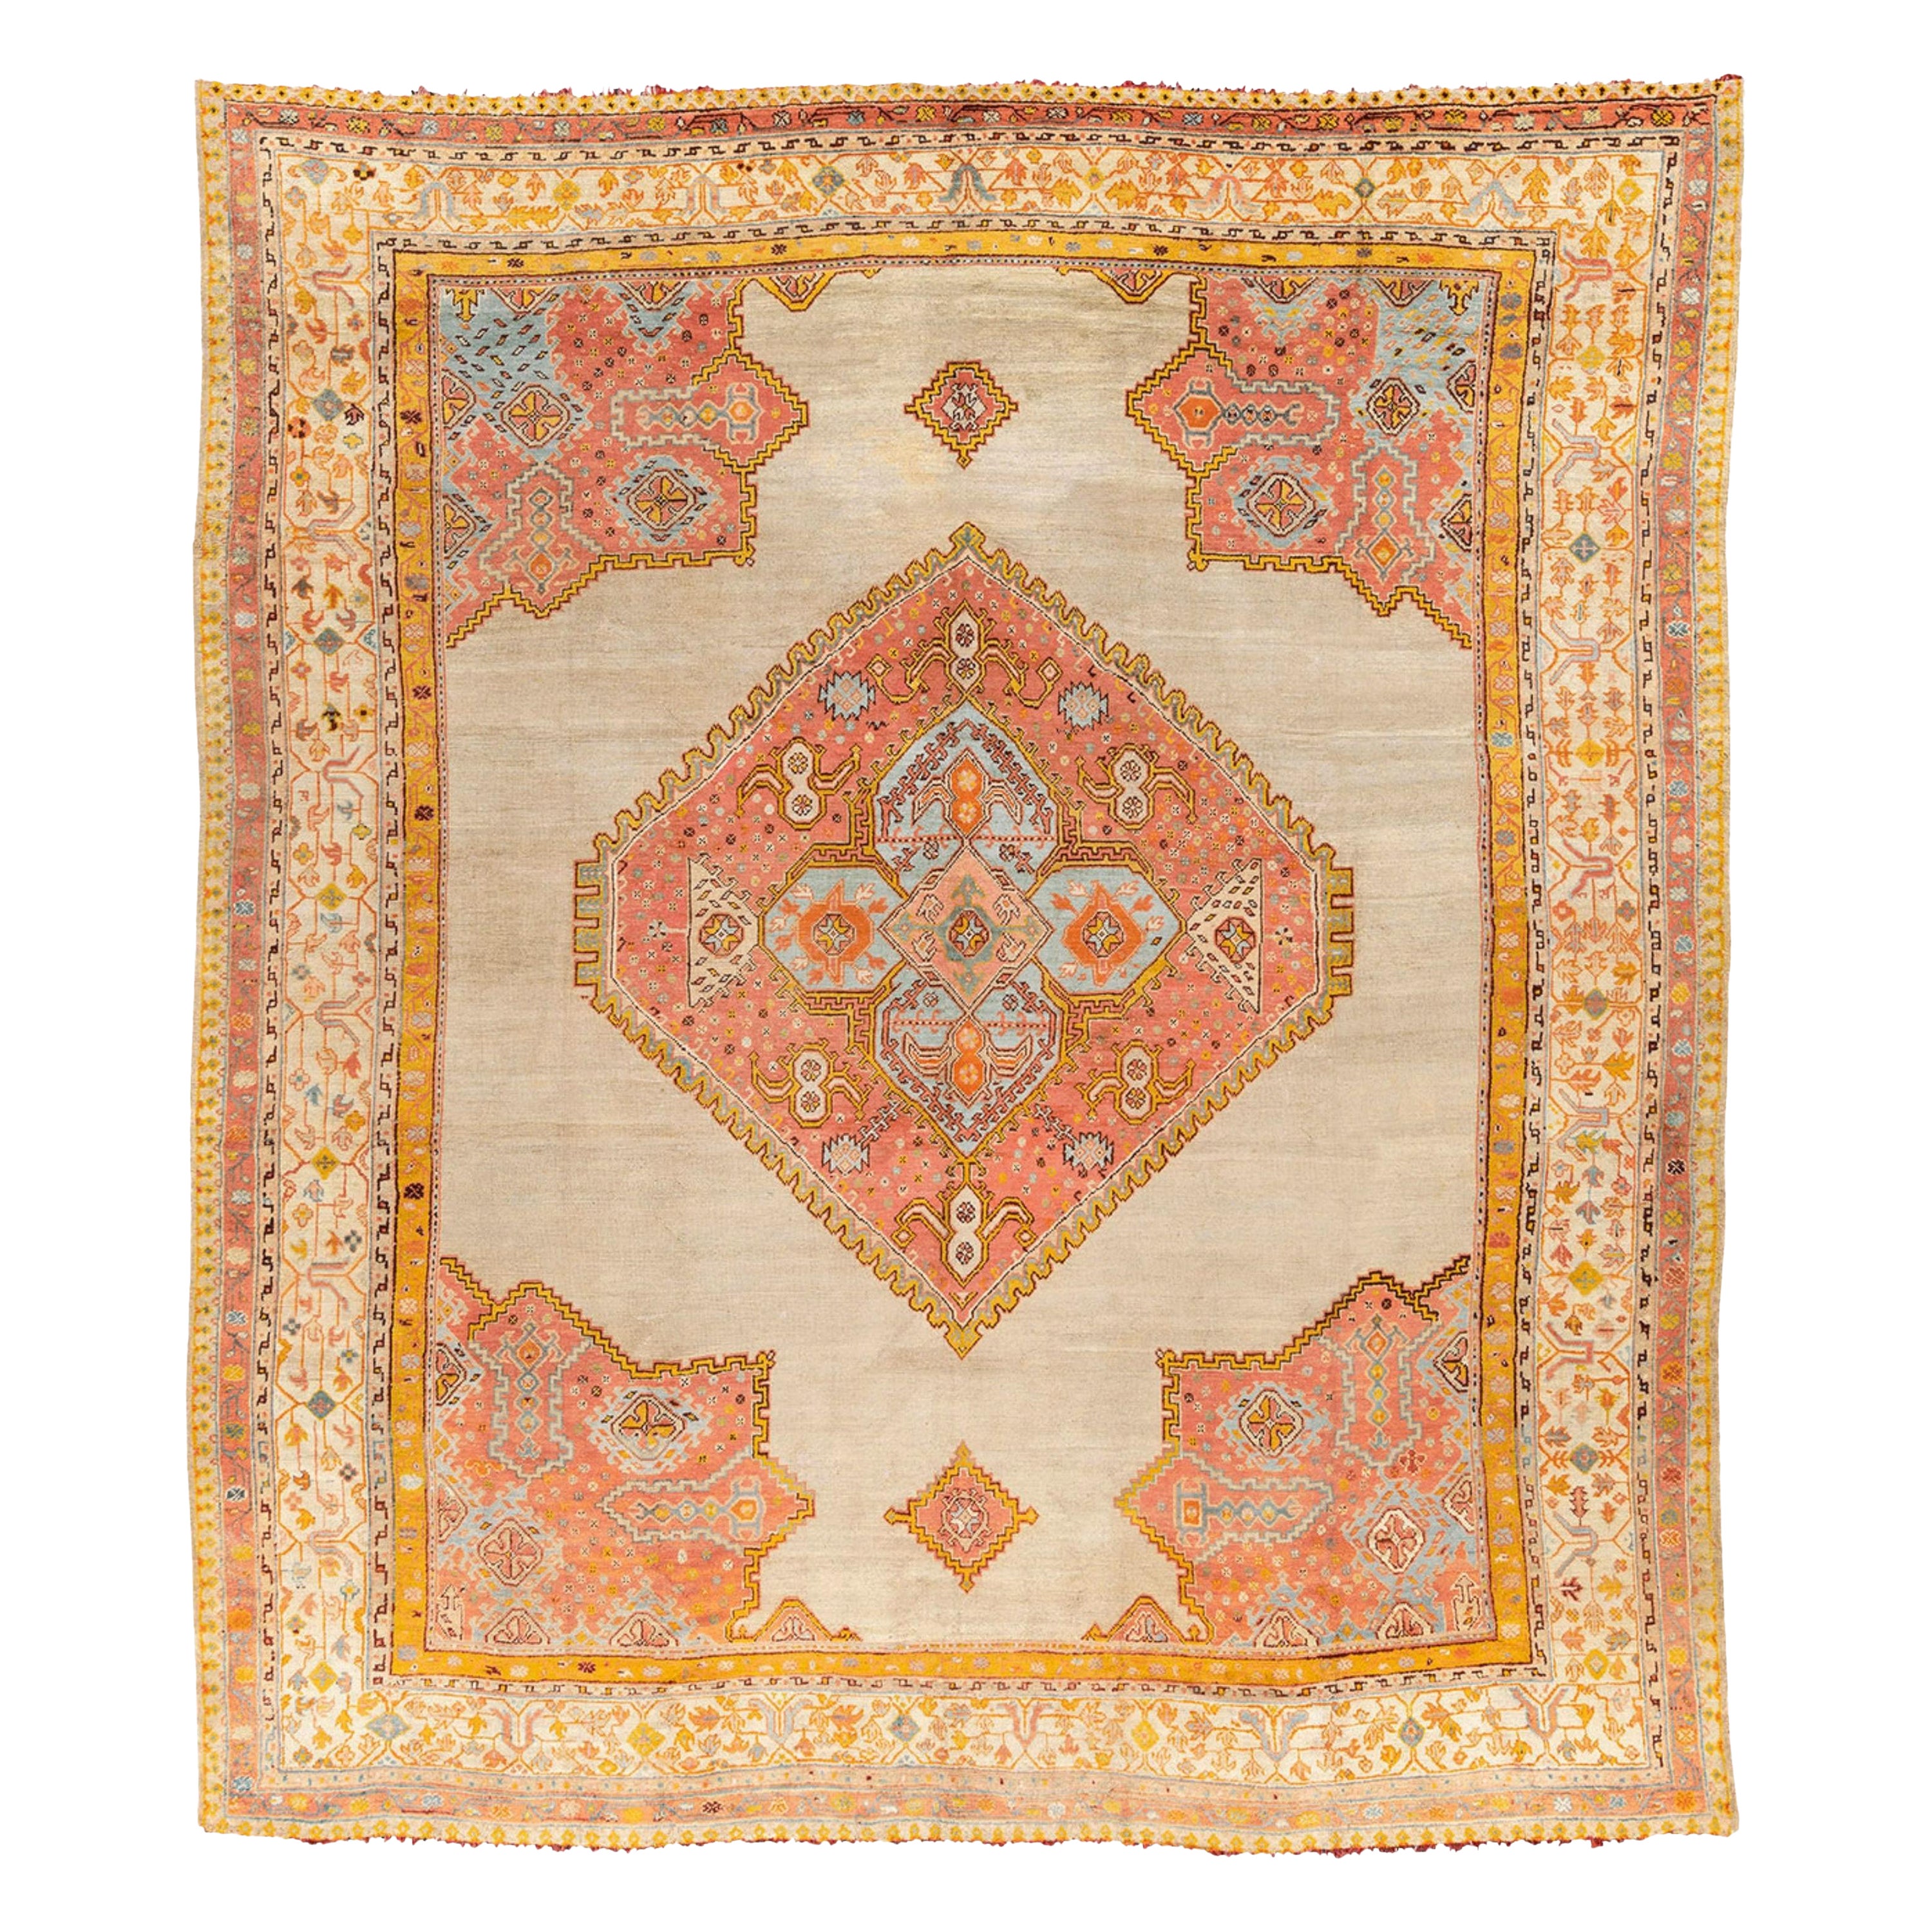 Antique Ushak Carpet - Large West Anatolia Ushak Rug Circa 1800’s, Antique Rug For Sale